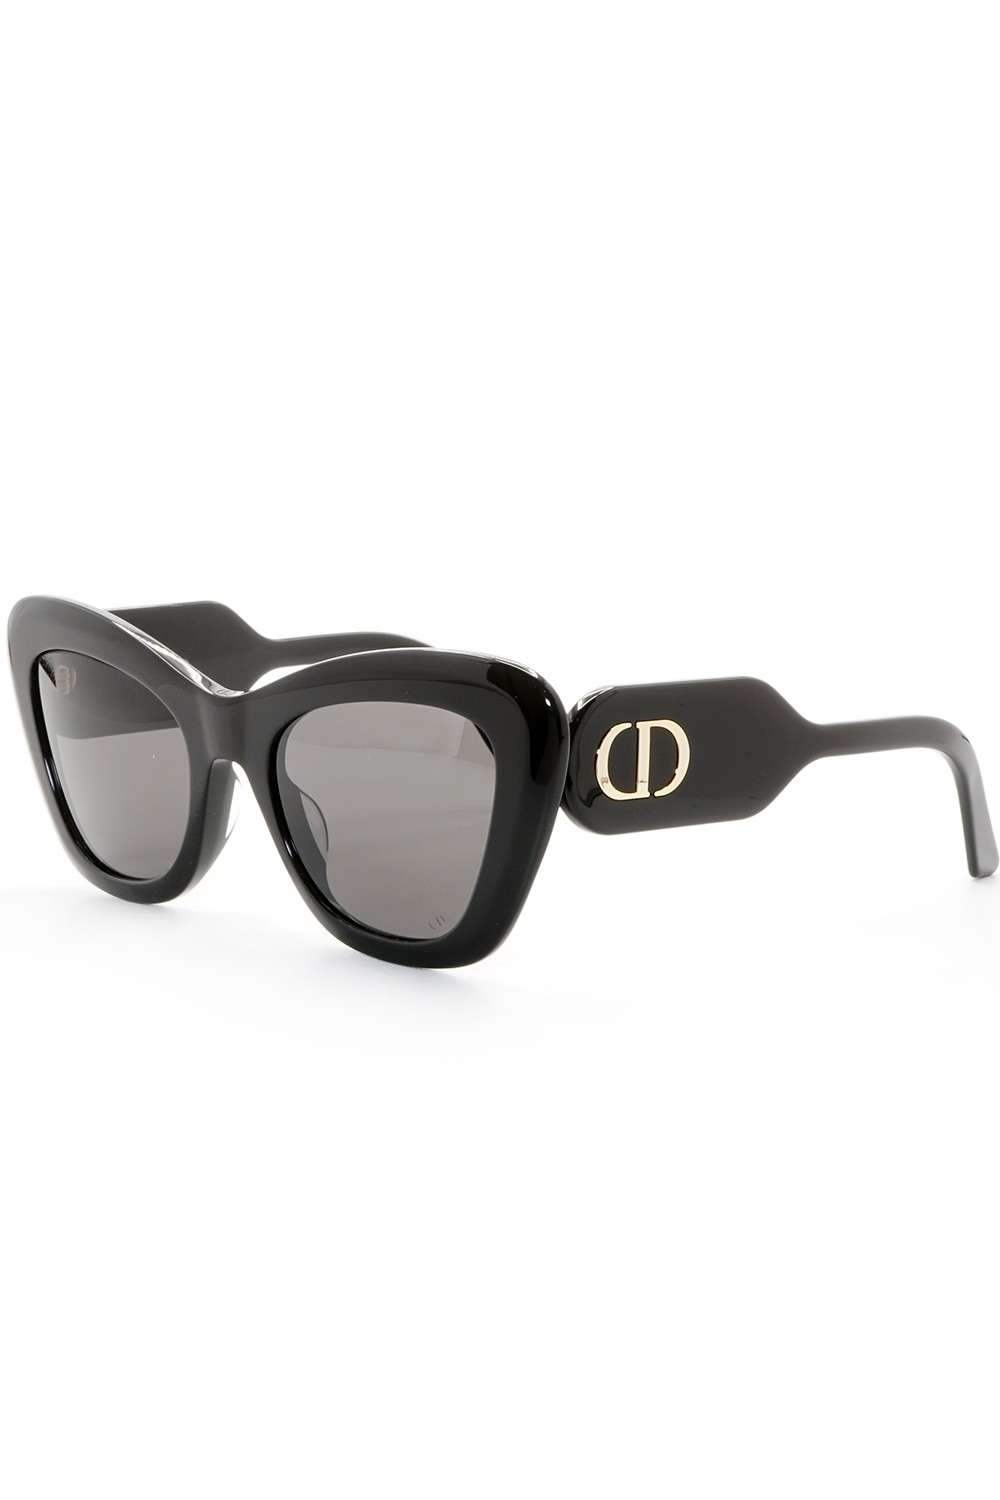 Christian Dior - Occhiali da sole in celluloide cat eye per donna nero - B1U